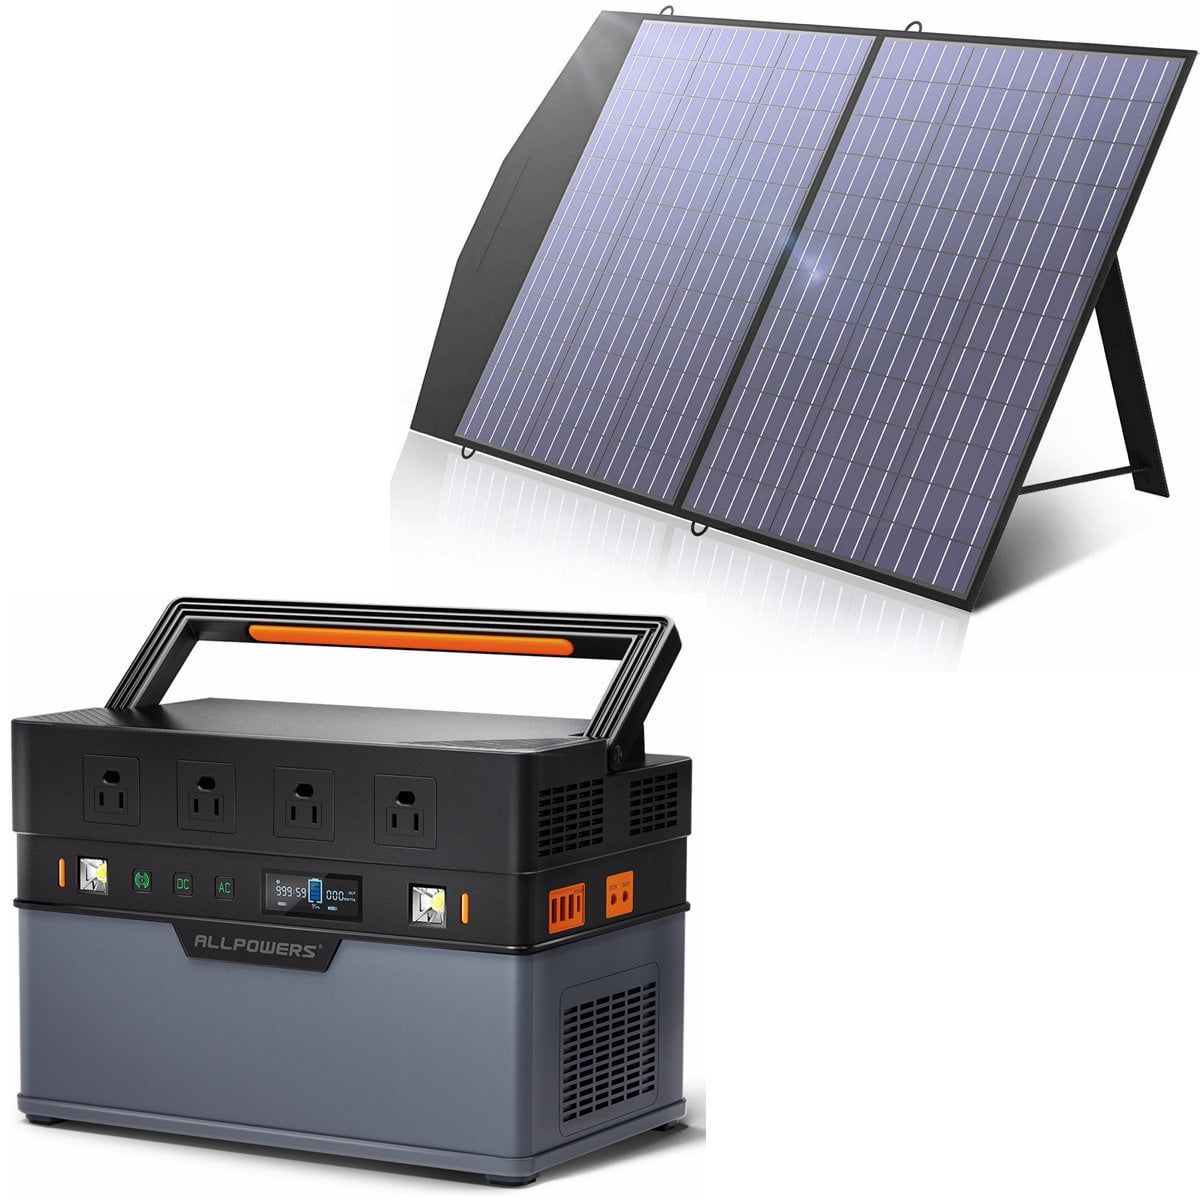 VDLPOWER : Portable Power Station, Solar Panel Kit